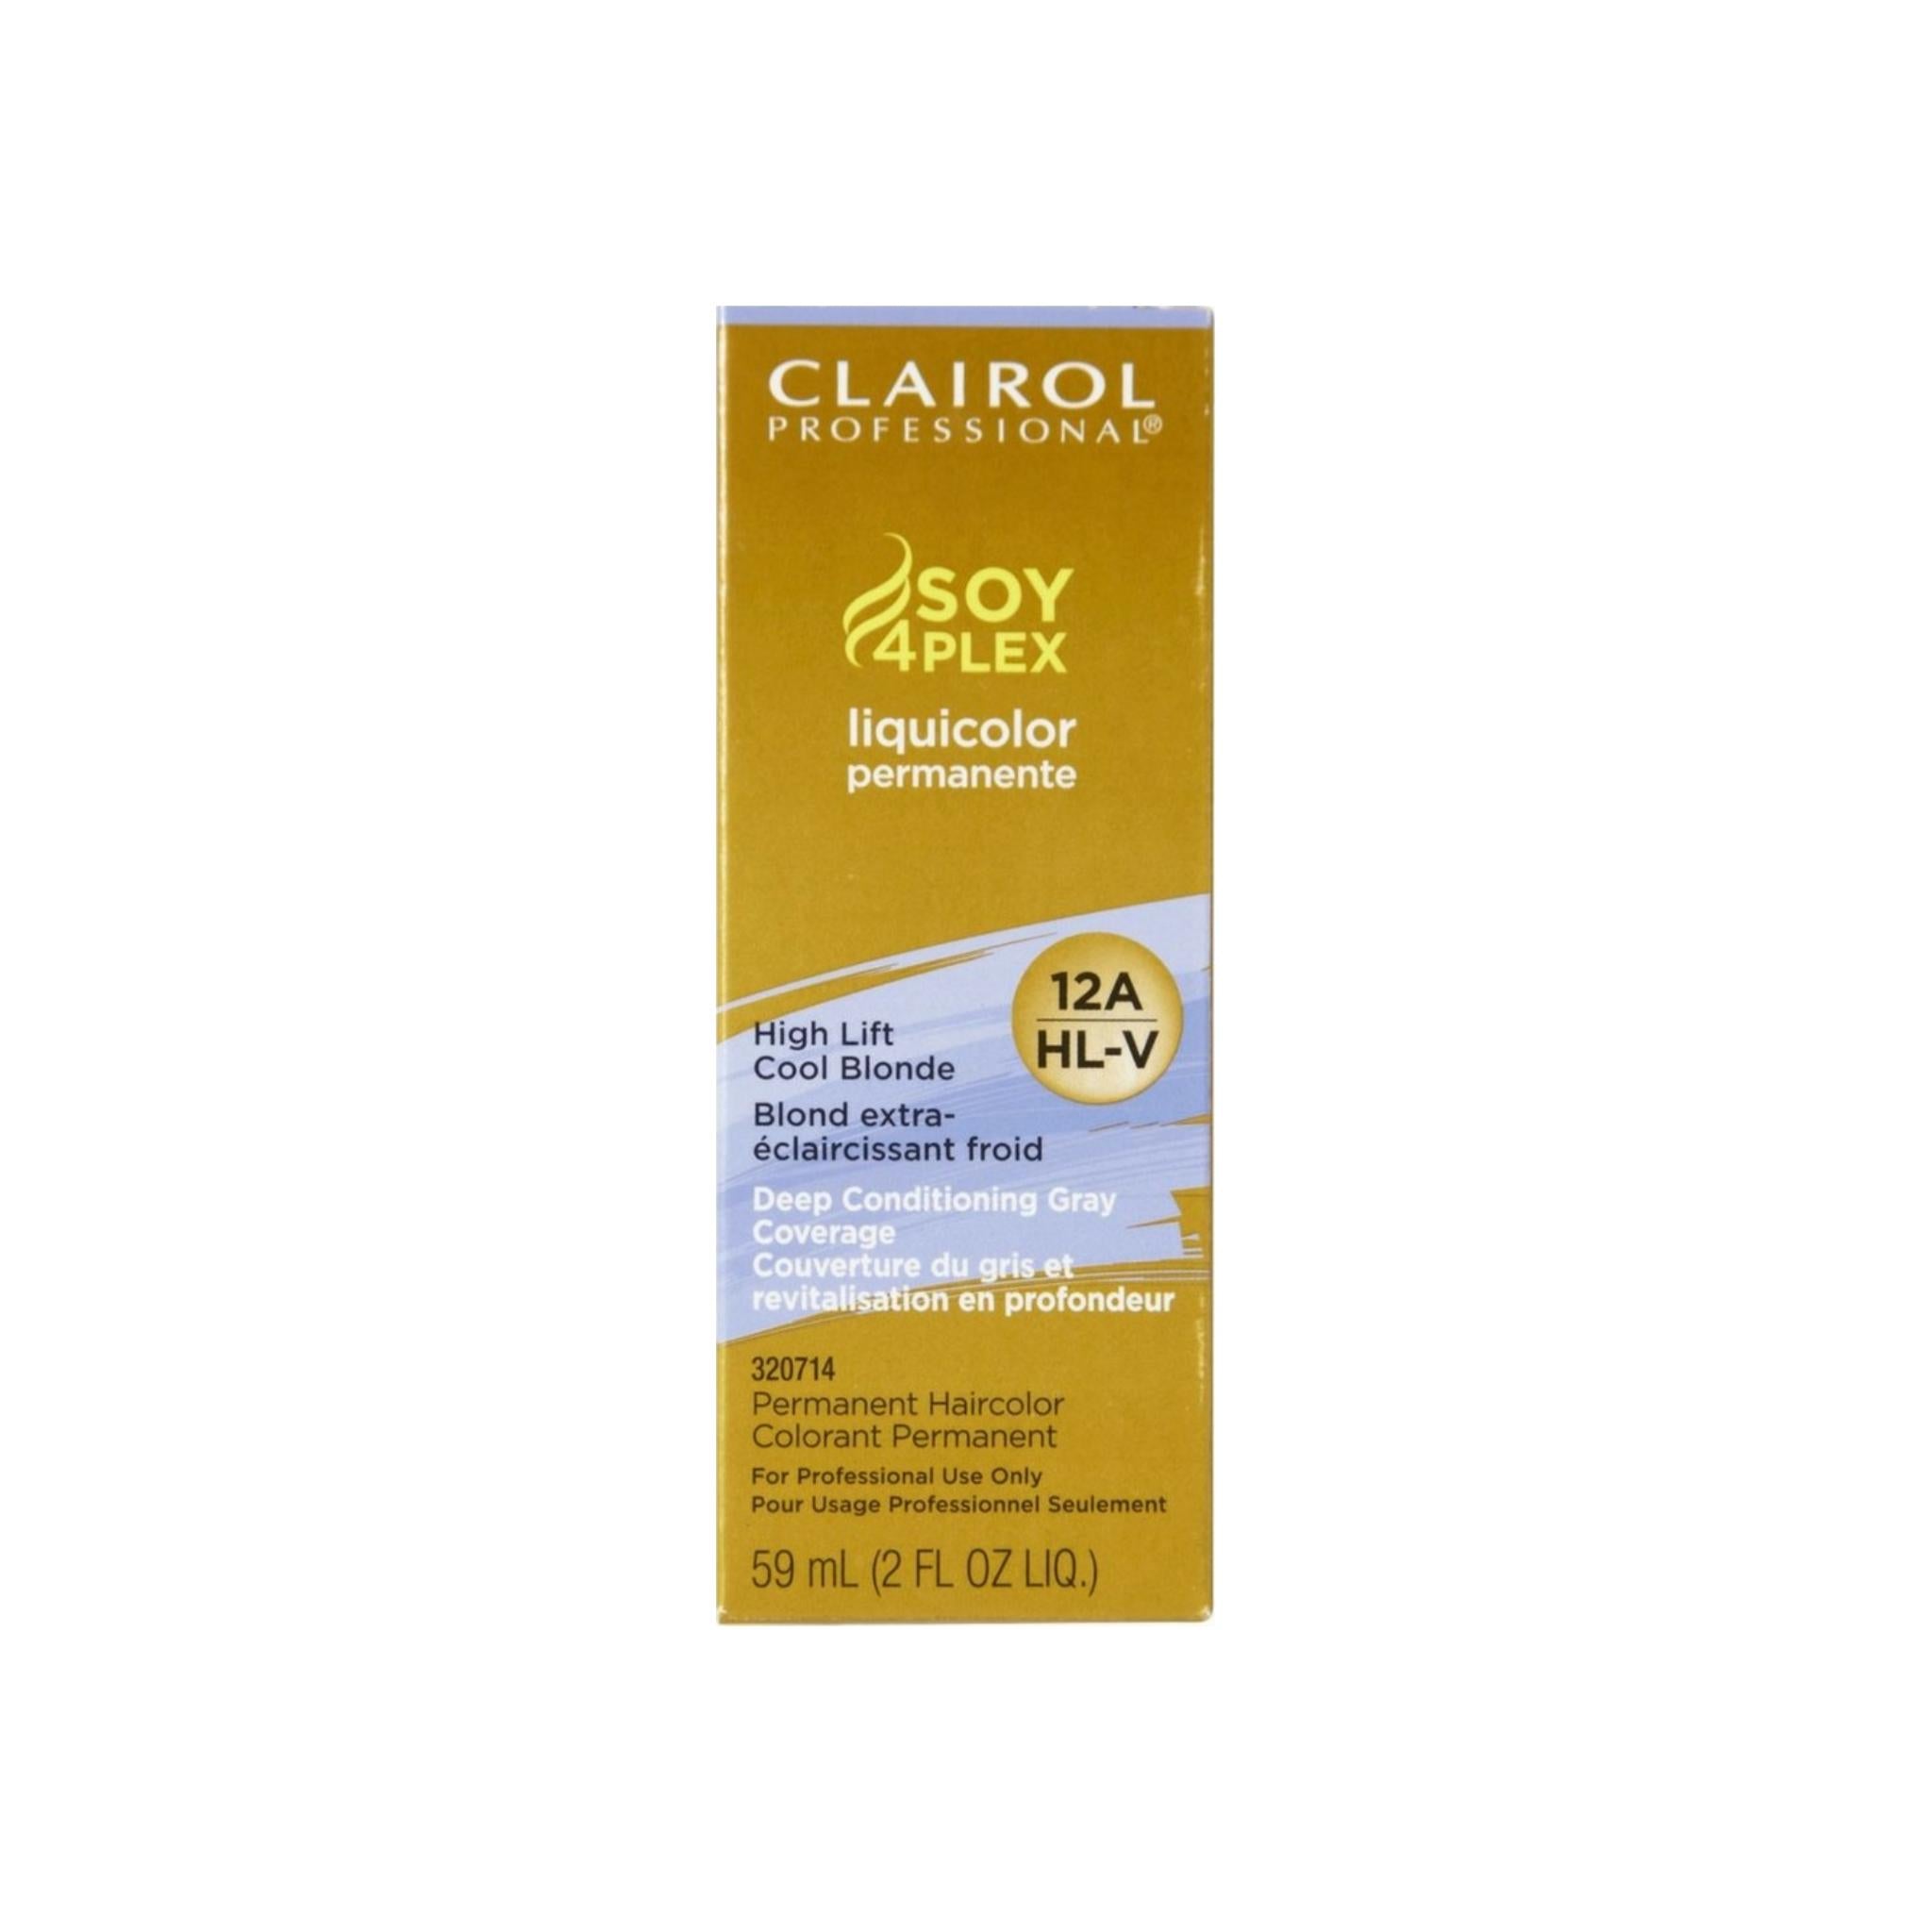 Clairol Professional 12a Hl V High Lift Cool Blonde Liquicolor